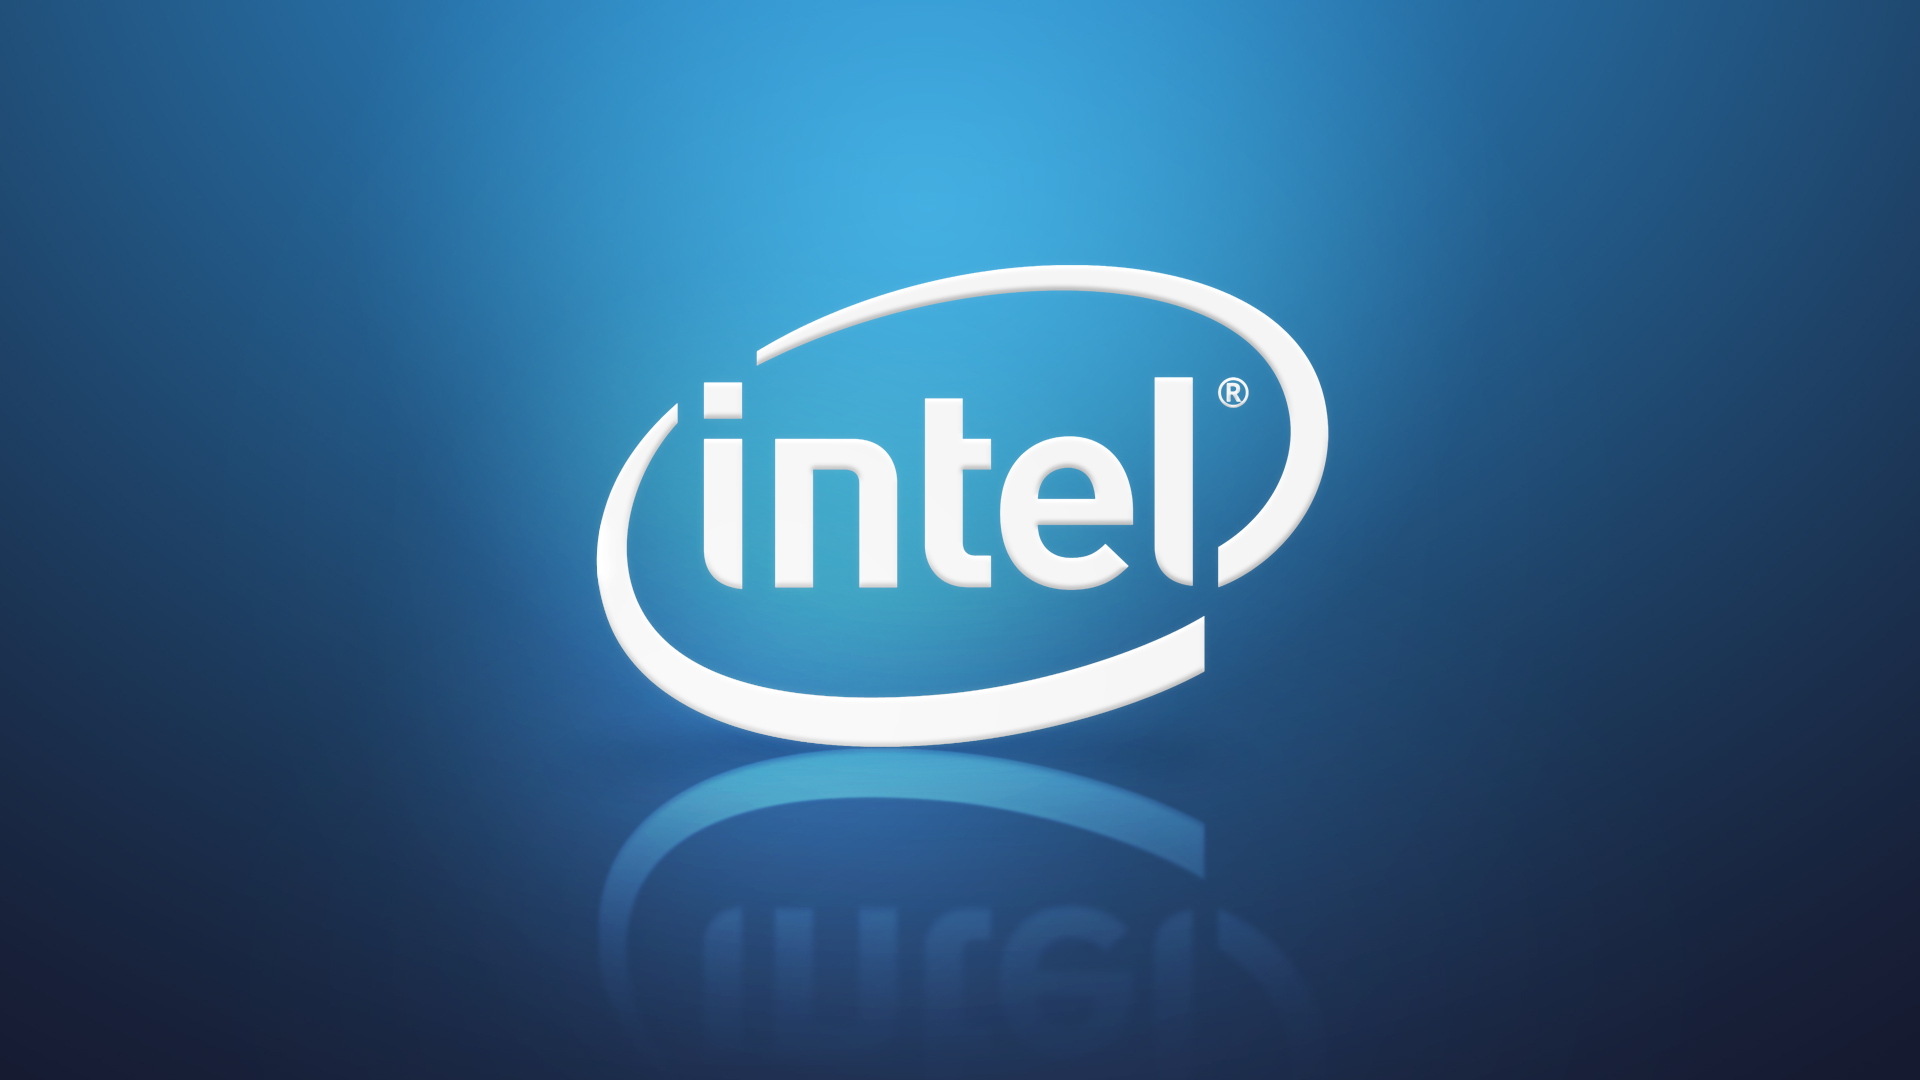 Интел логотип. Эмблема Intel Core. Компания Интел лого. Логотип Intel inside. Заставка Интел.